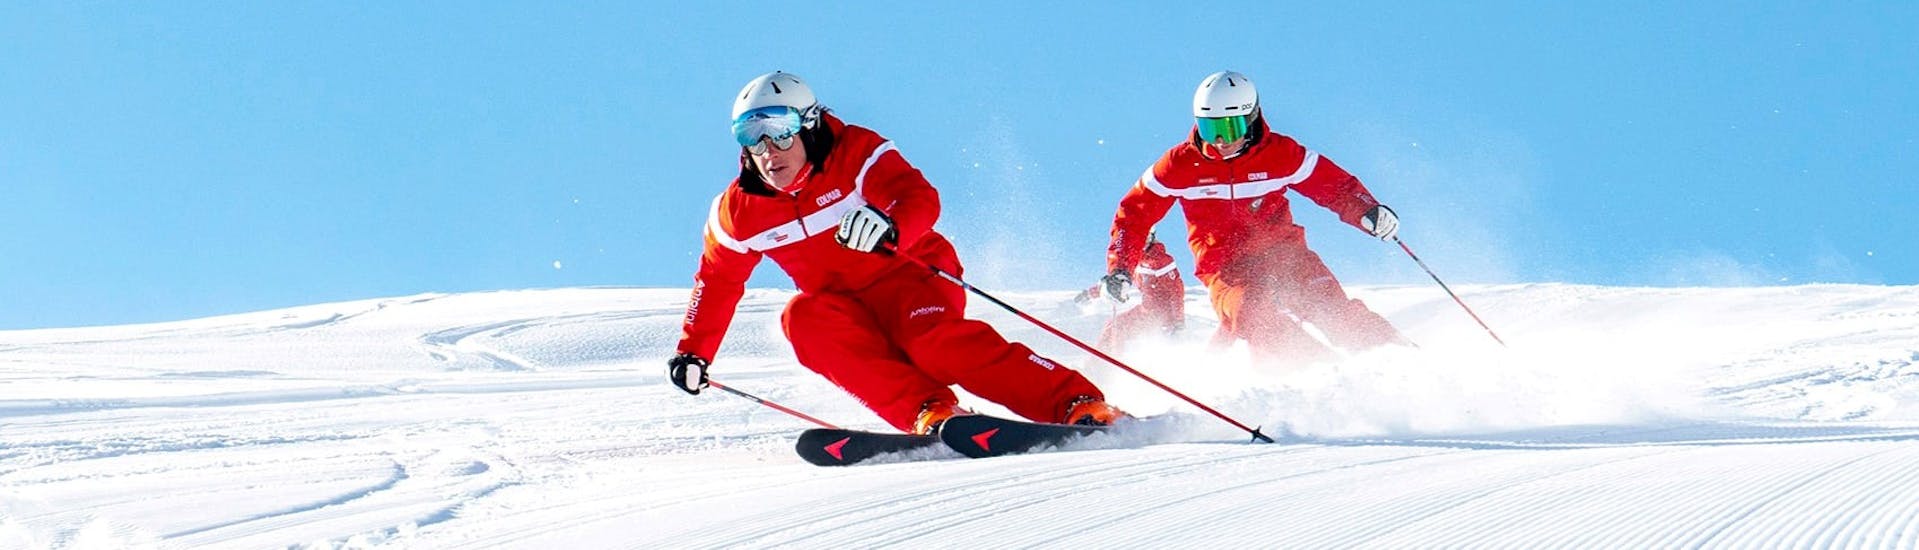 Cours de ski Adultes dès 18 ans - Avancé.